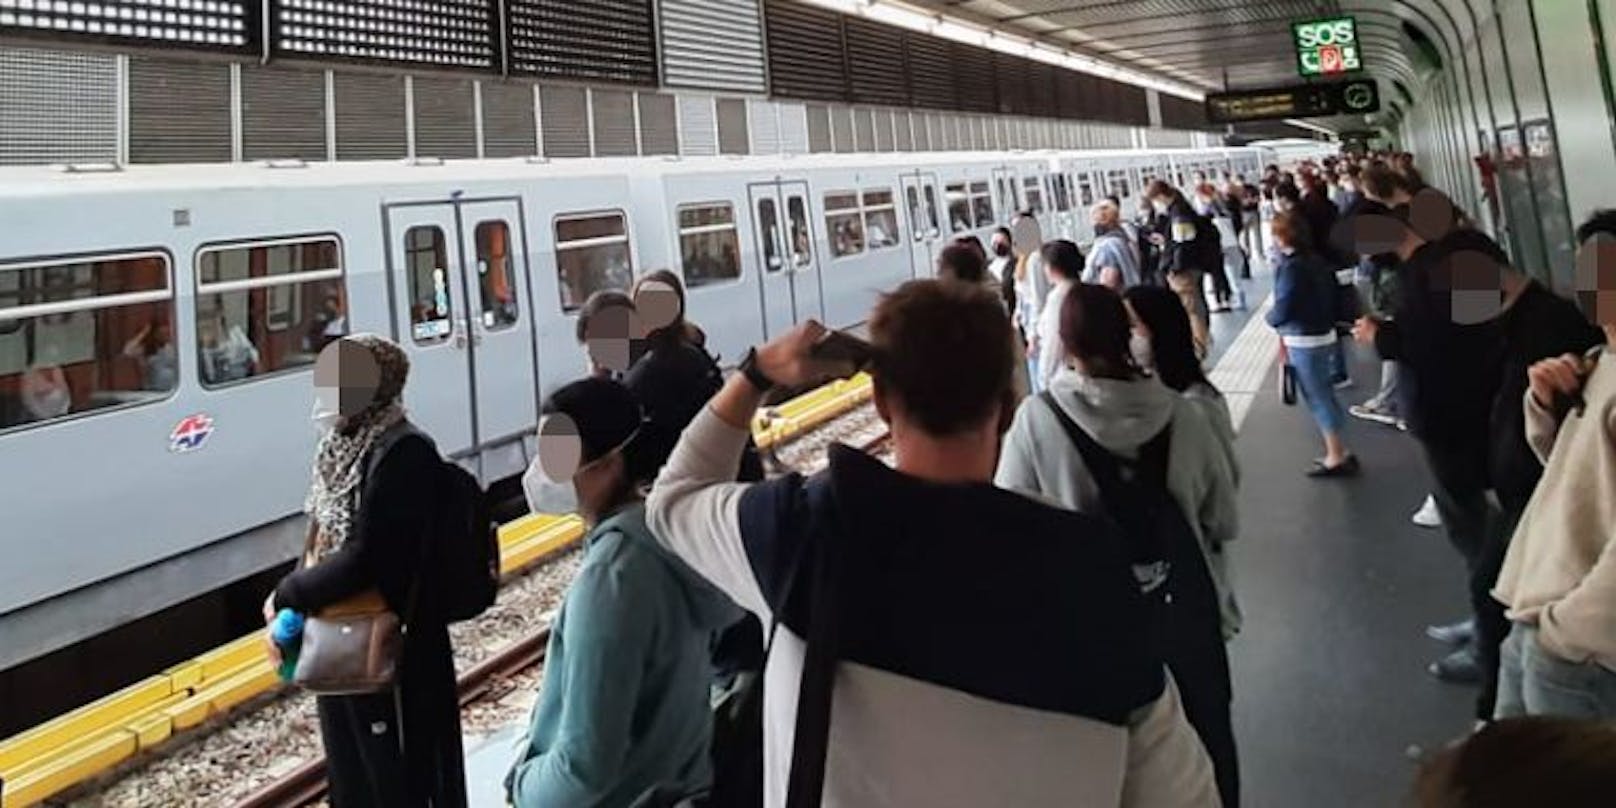 "Die U-Bahnlinie U4 kann wegen eines schadhaften Fahrzeuges derzeit in beiden Richtungen nur unregelmäßig fahren", heißt es aktuell (Stand 7.30 Uhr) auf der Homepage der Wiener Linien – und das ausgerechnet im Frühverkehr! Fahrgäste müssen sich also Mittwochfrüh auf längere Wartezeiten einstellen.